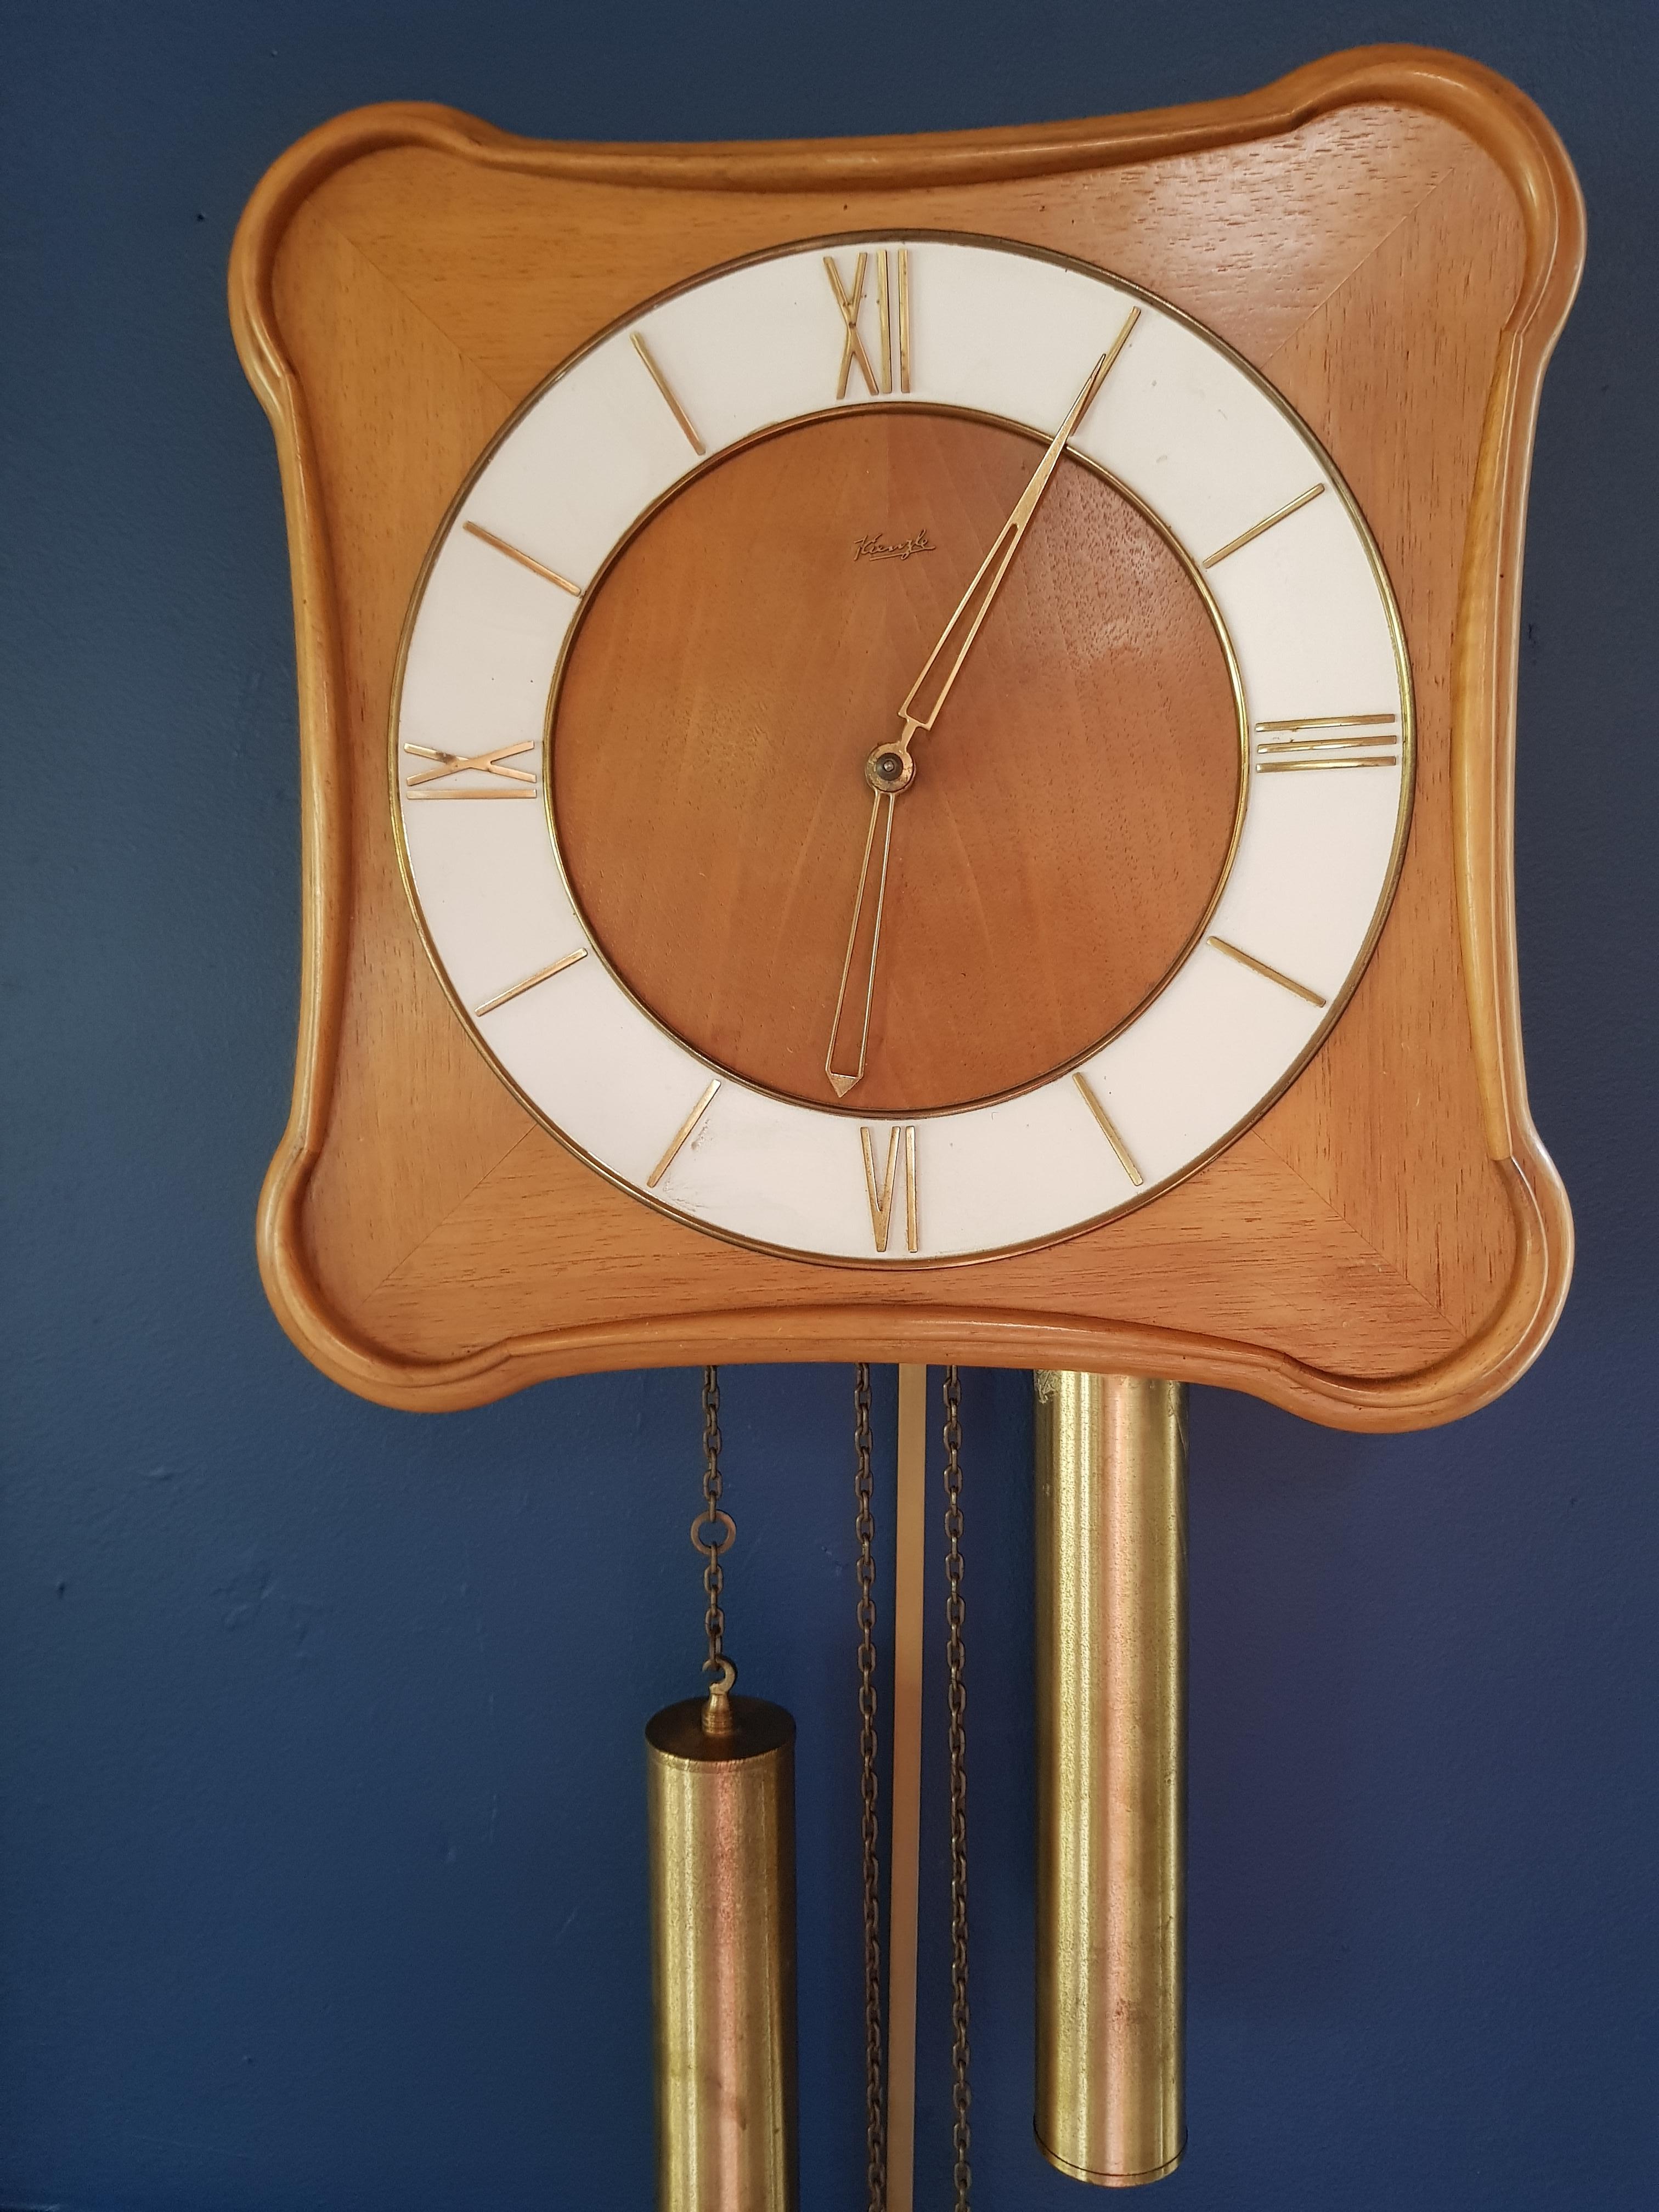 Danish vintage hanging clock by M. Christiensen & Søn, 1960s, teak wood.
 